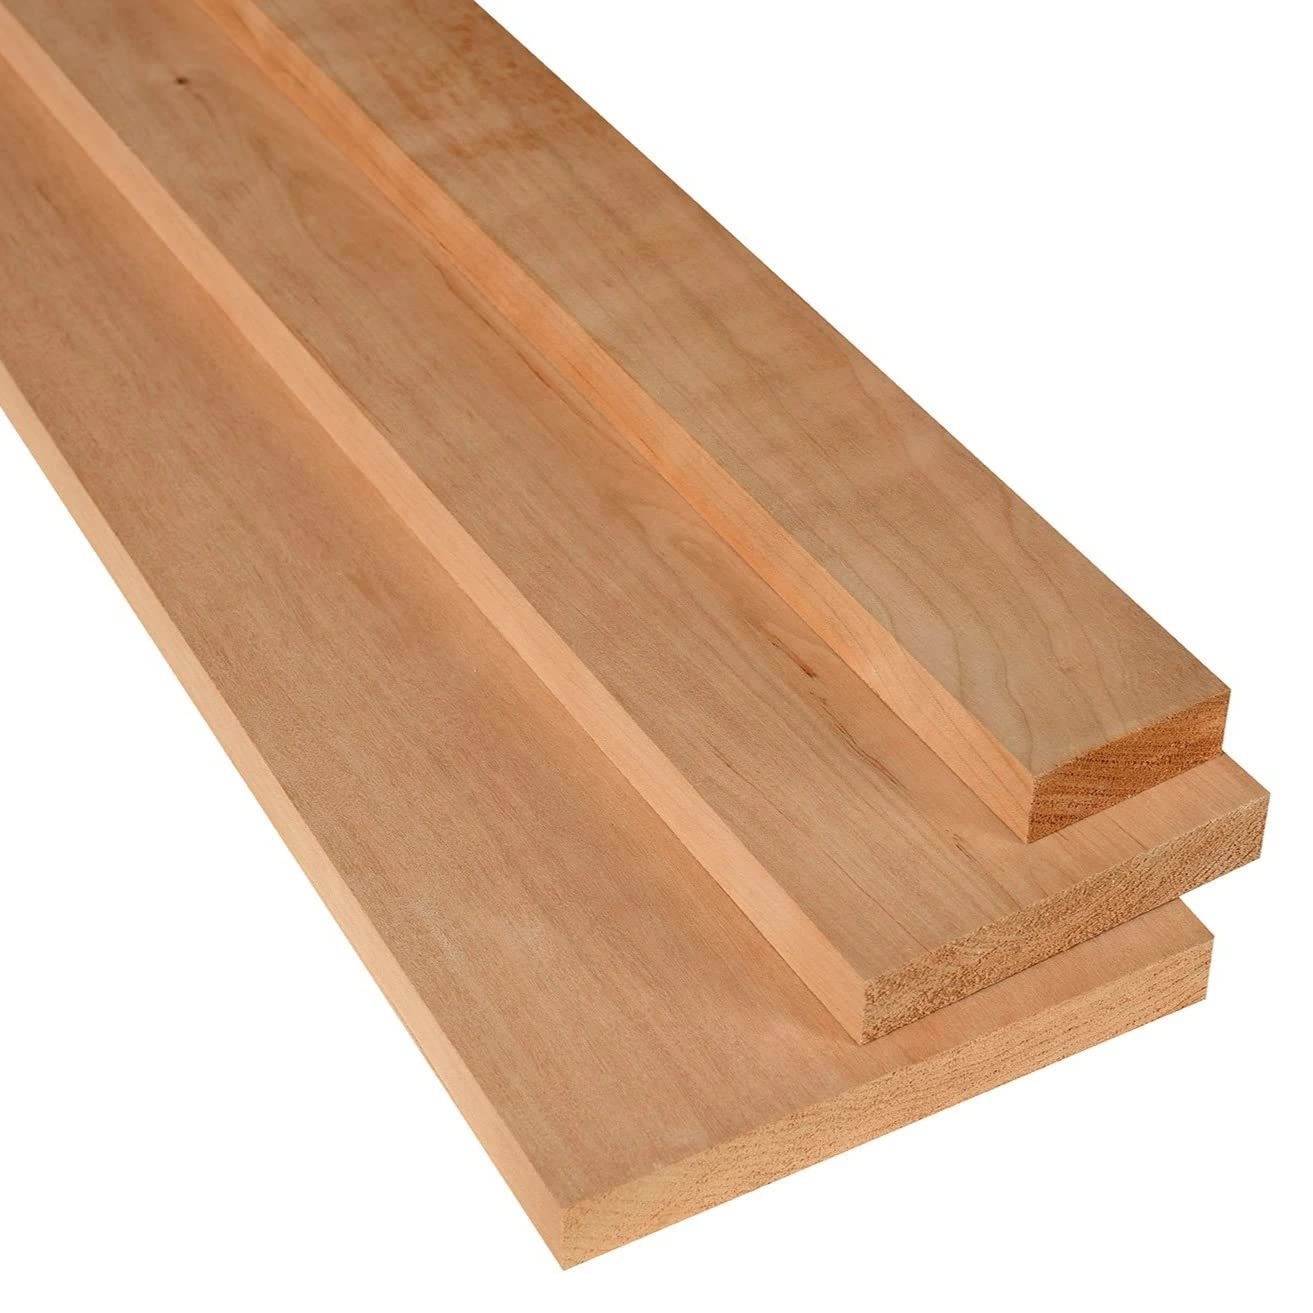 Exotic Wood Zone 's Cherry Lumber - (3/4" x 6" x 36" - 3 Pack)